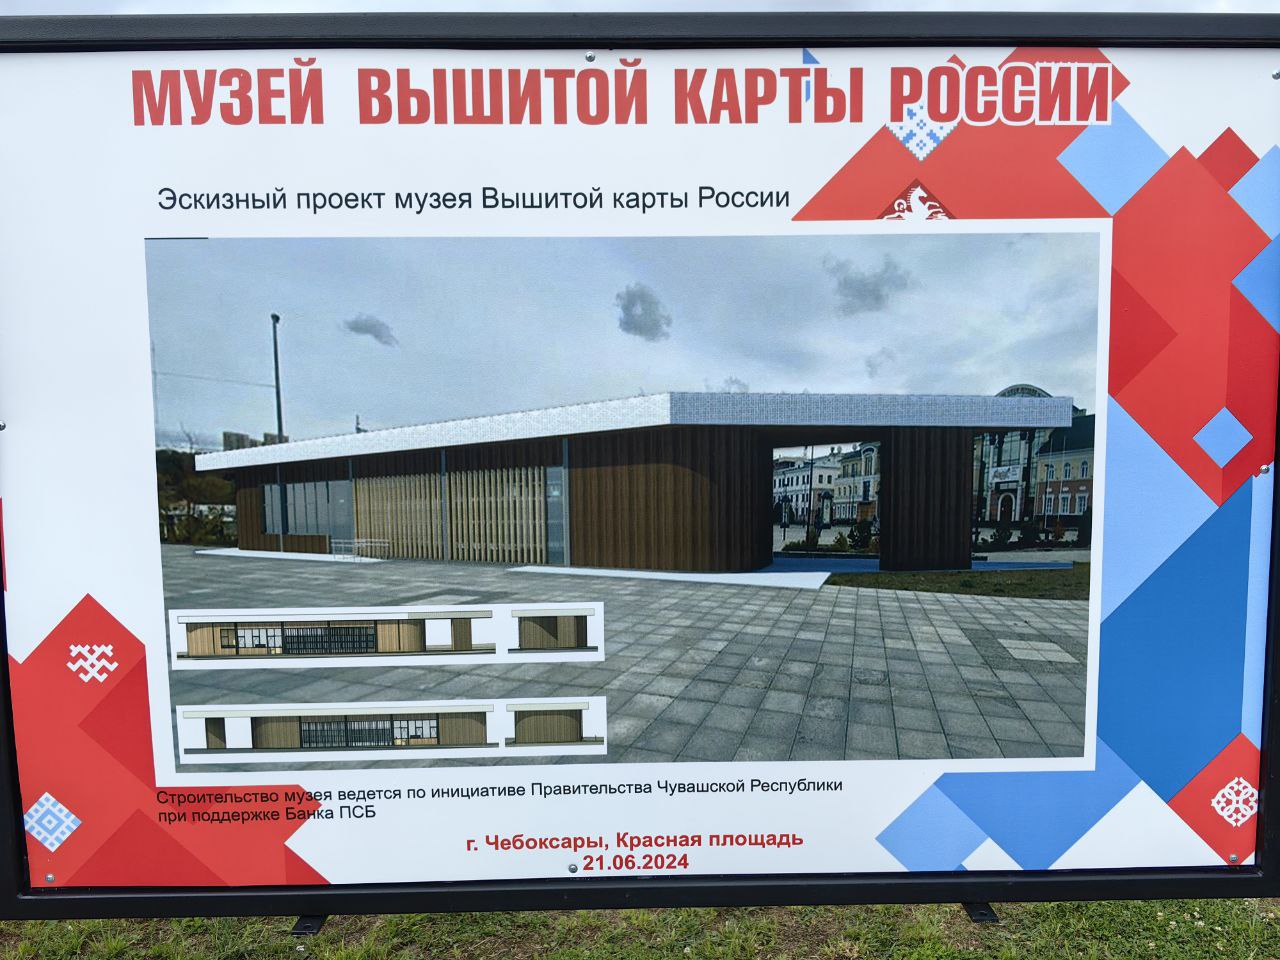 На месте строительства будущего Музея Вышитой карты России заложили символический камень